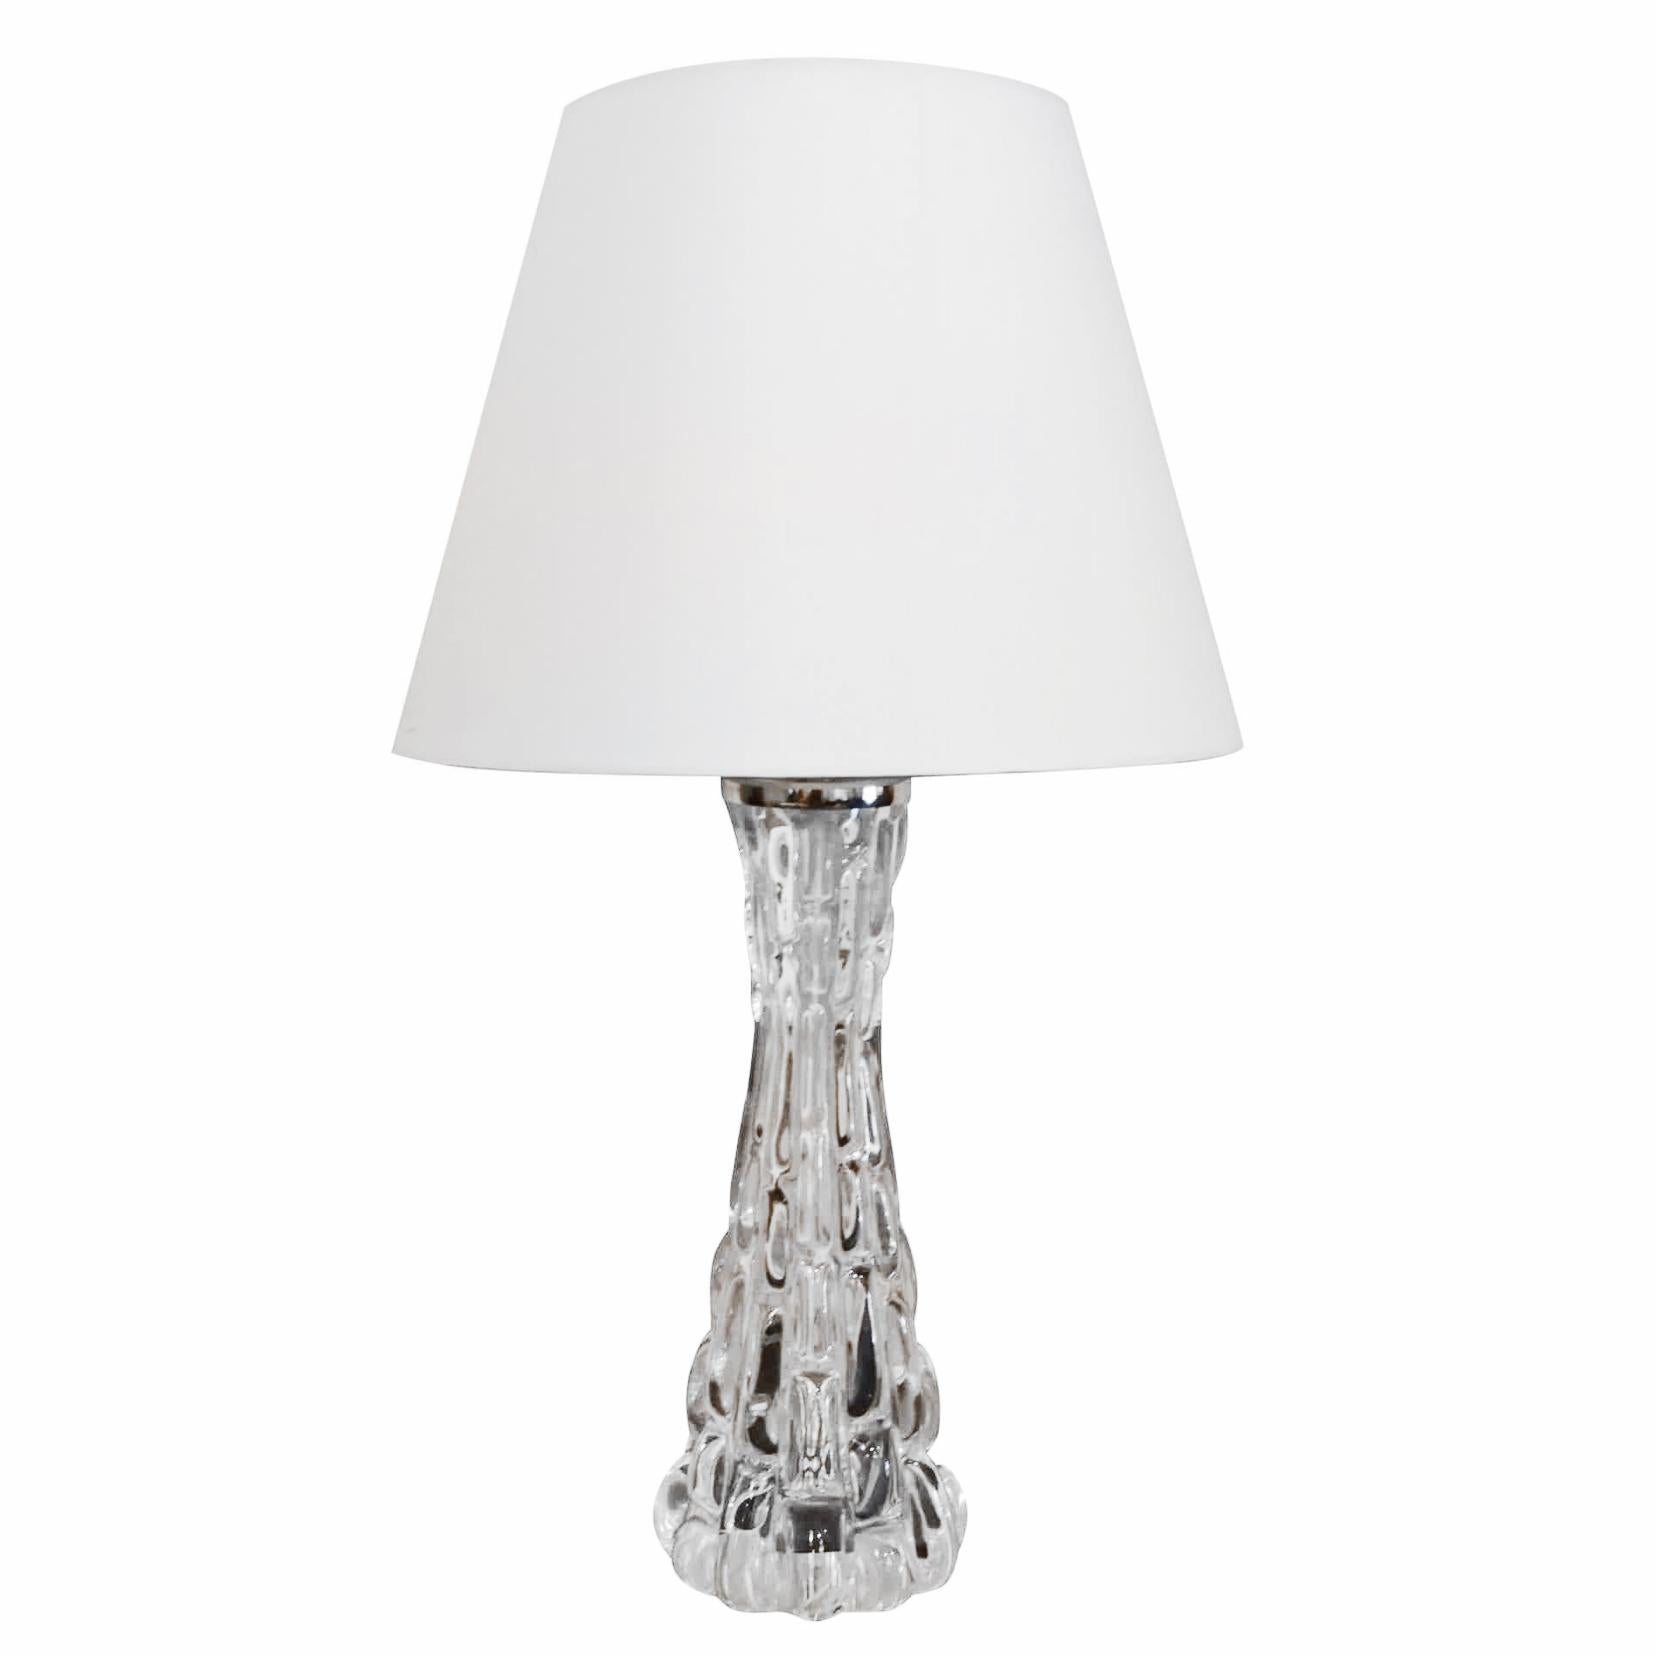 Lampe de table suédoise vintage du milieu du siècle, en verre soufflé Orrefors, avec un abat-jour blanc, dotée d'une douille à une lumière. Cette lampe de bureau scandinave a été conçue par Carl Fagerlund et produite par Orrefors. Elle est en bon